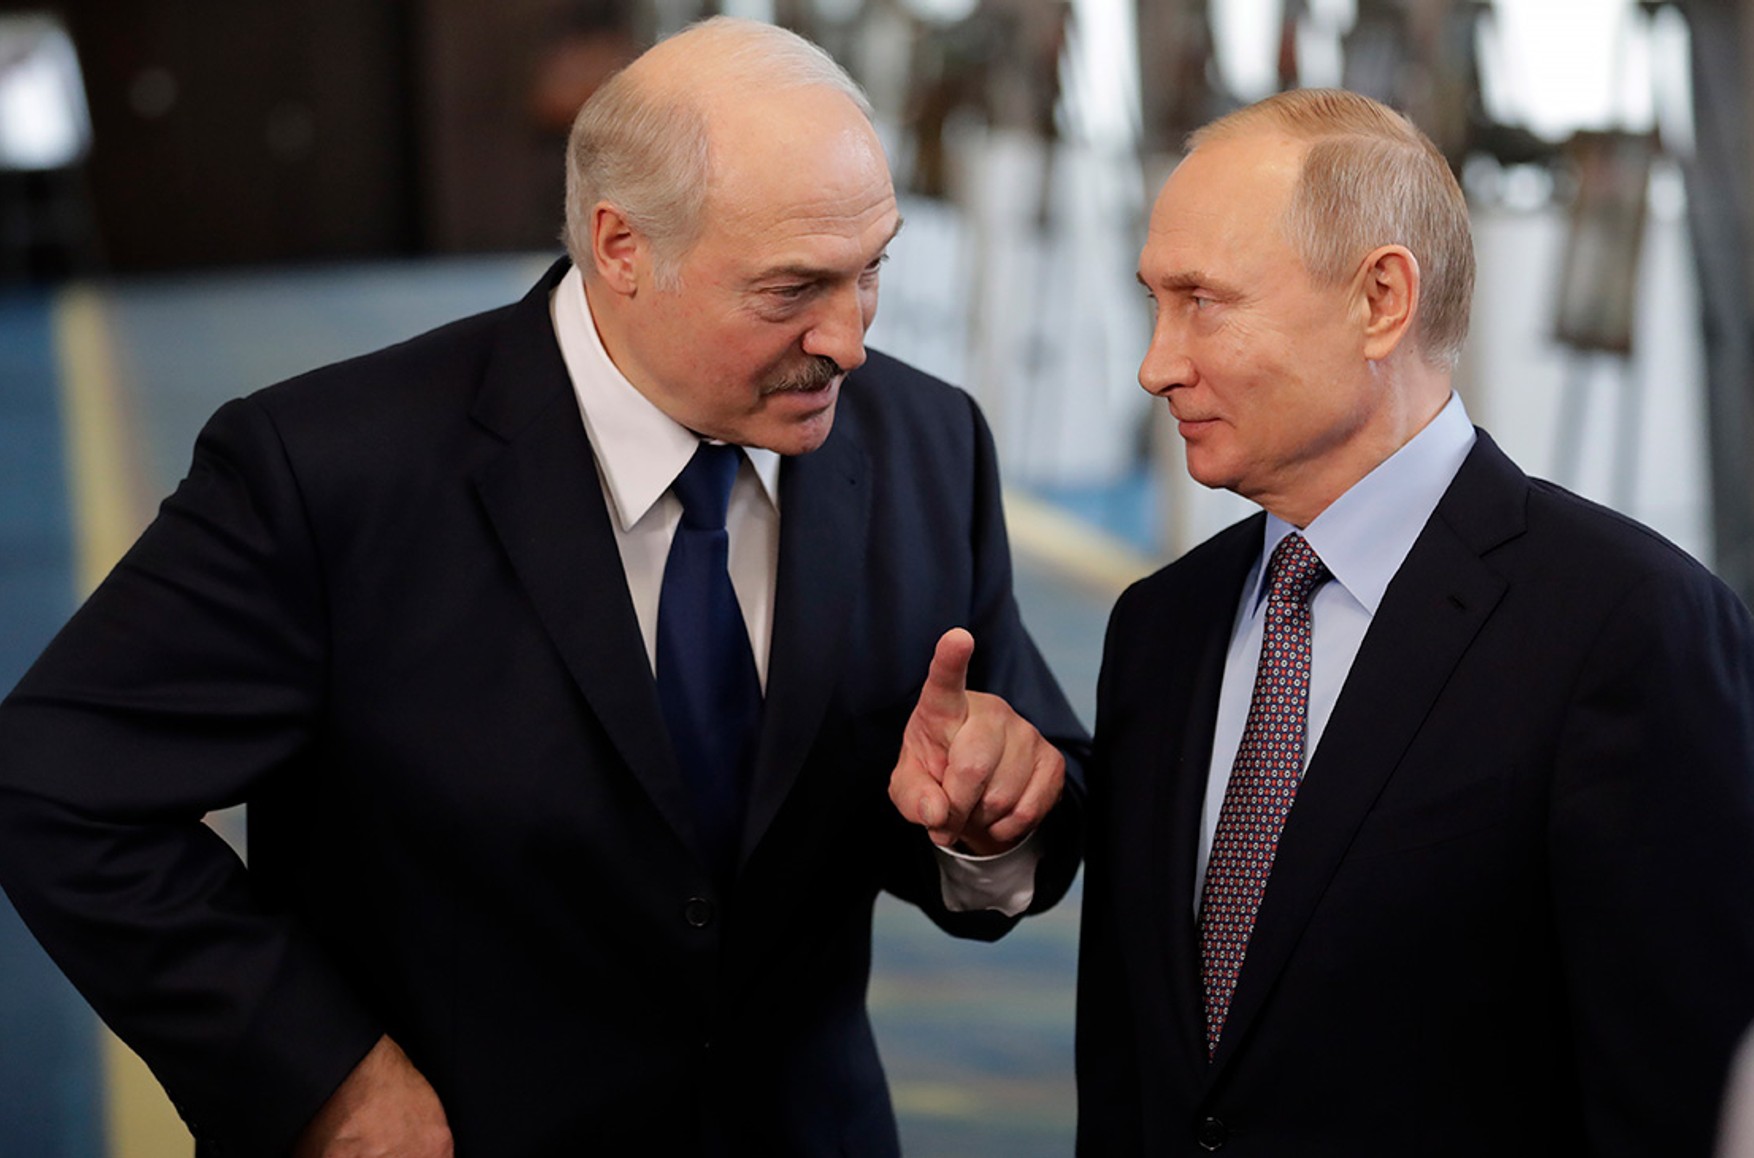 Лукашенко: «США розміщують в Україні військові бази, ми обговорювали це з Путіним». Олександр Гольц: «Президенти двох країн брешуть як дихають»